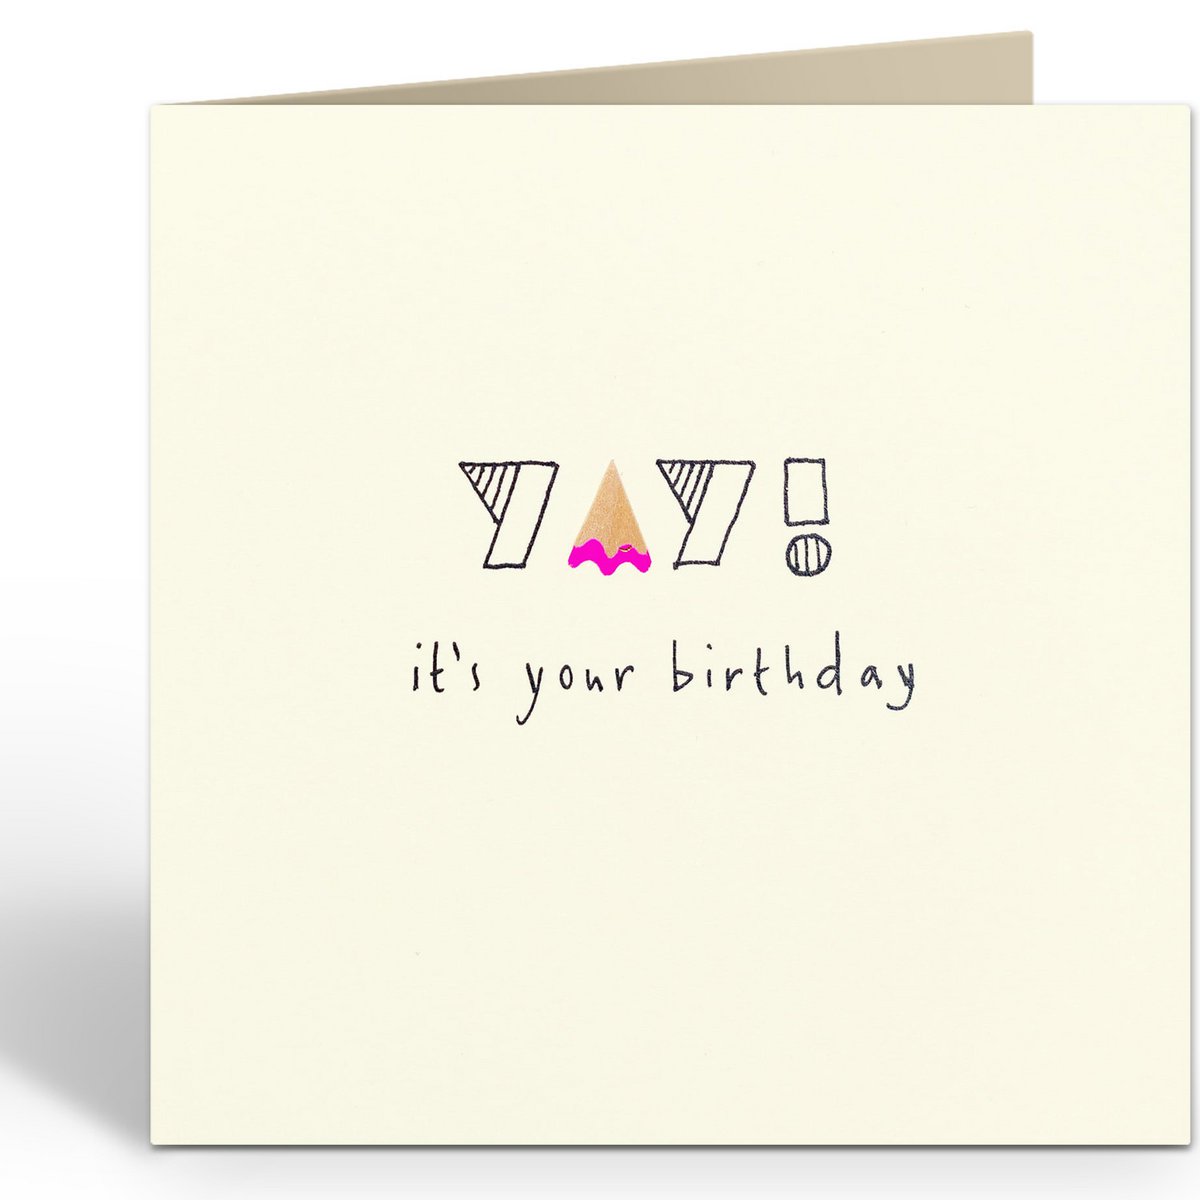 The Card Company - Wenskaart 'Birthday Yay!' (Dubbel)